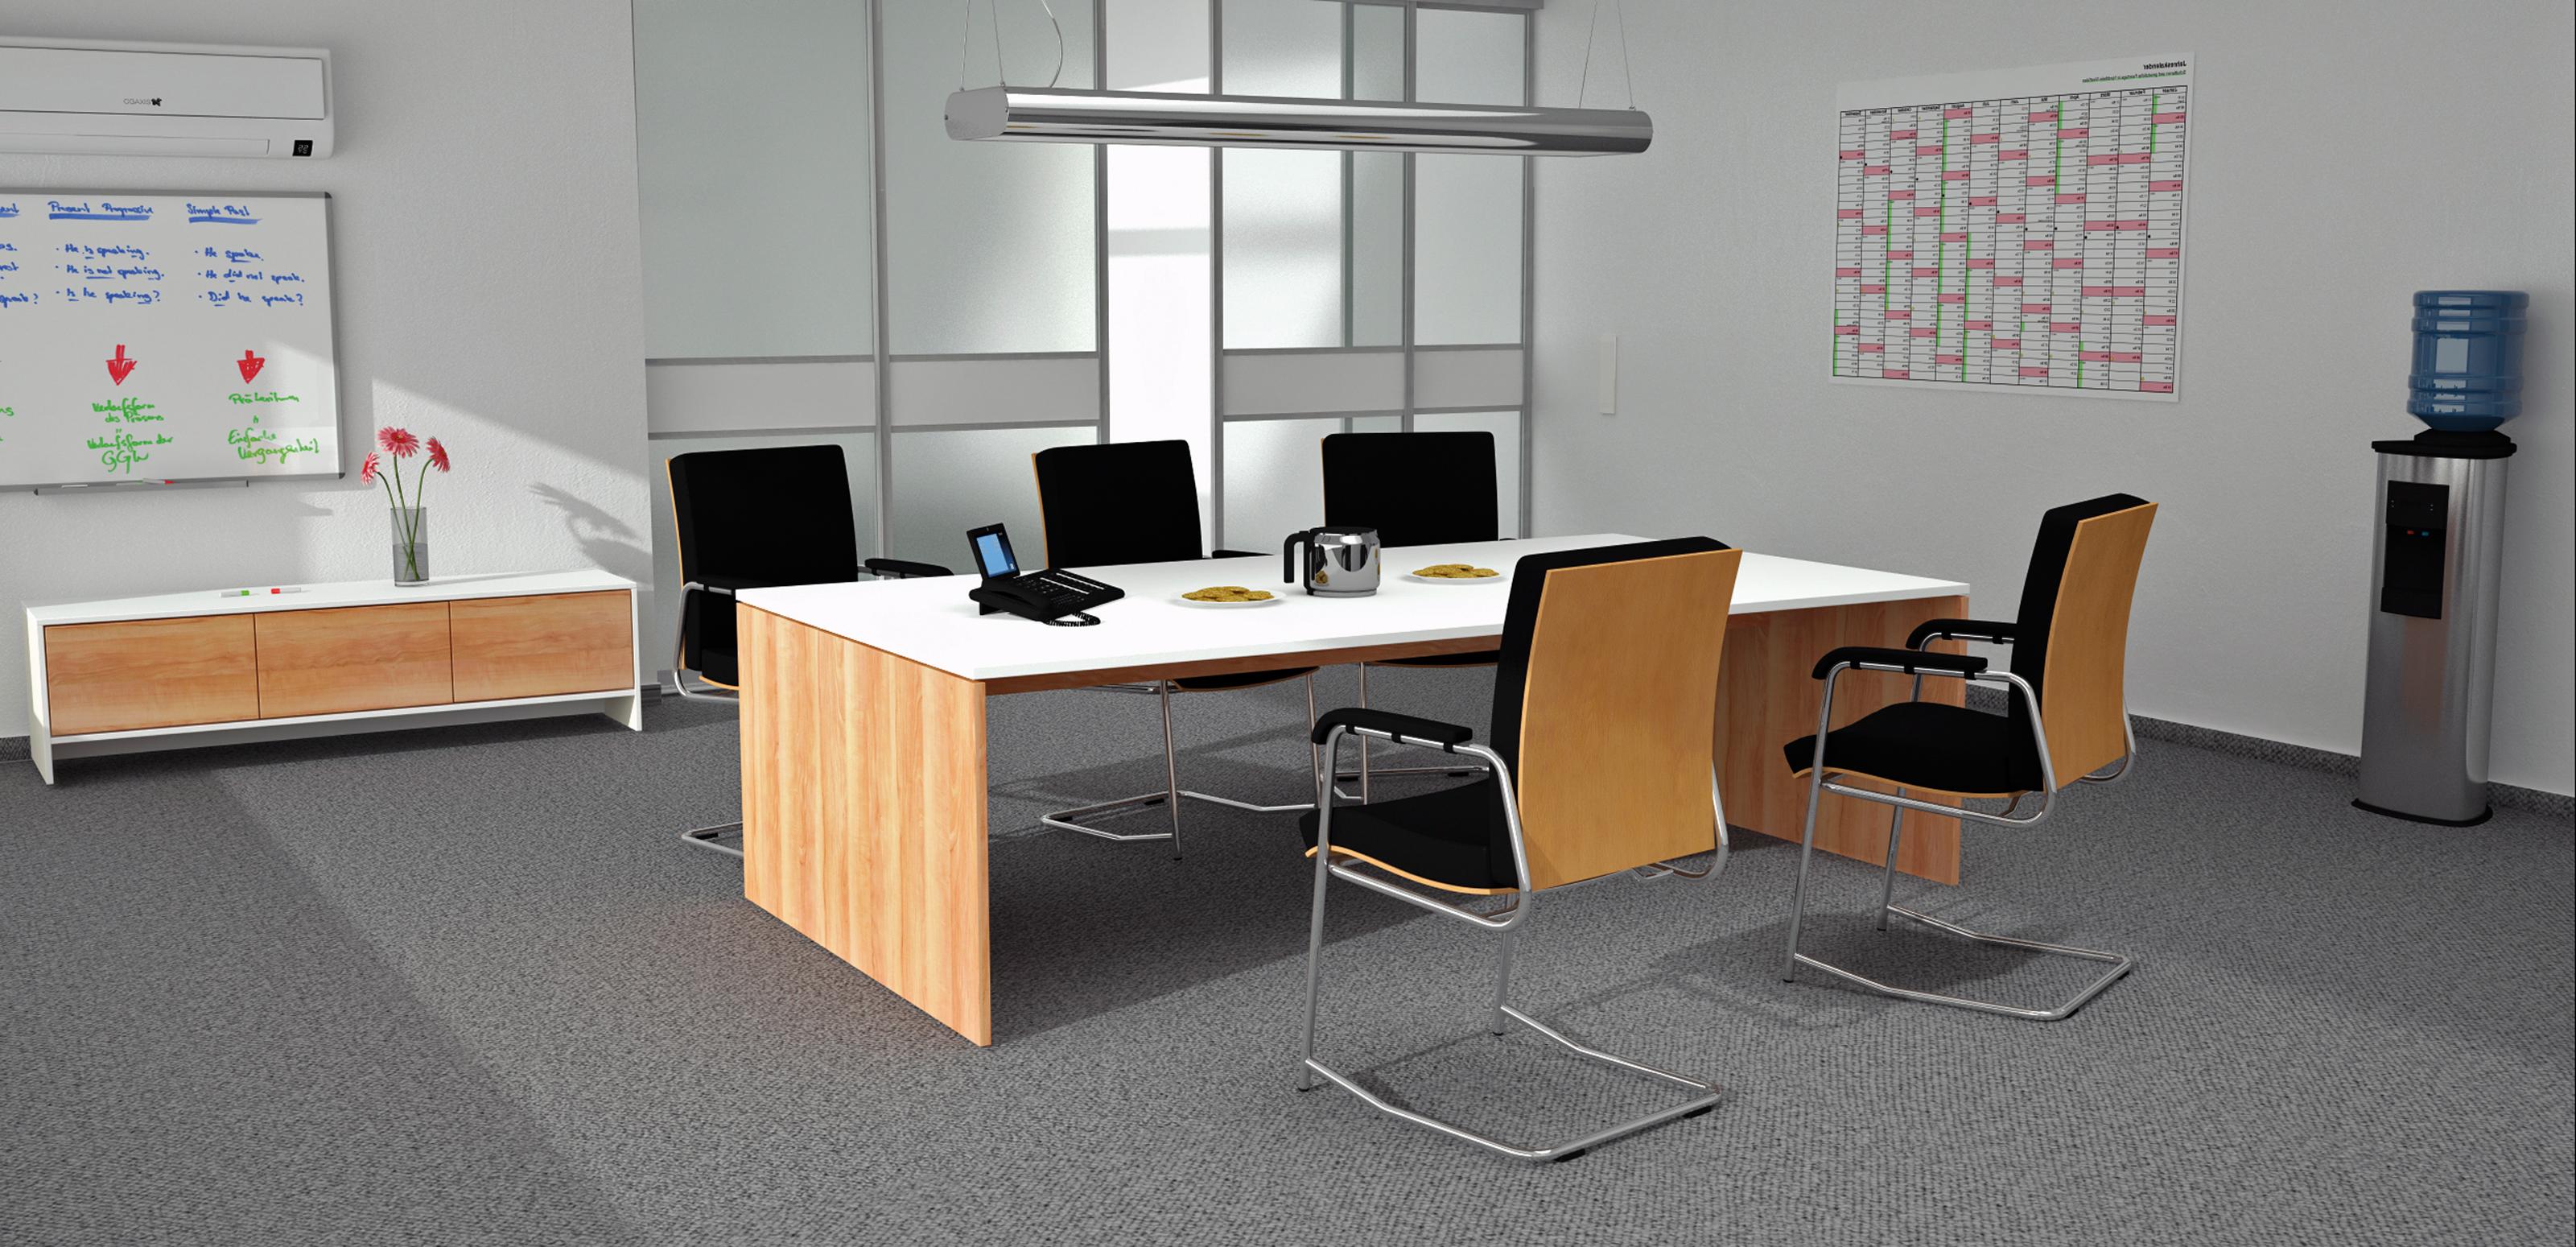 Konferenztisch mit Schiebetür #büro #arbeitstisch ©deinSchrank.de